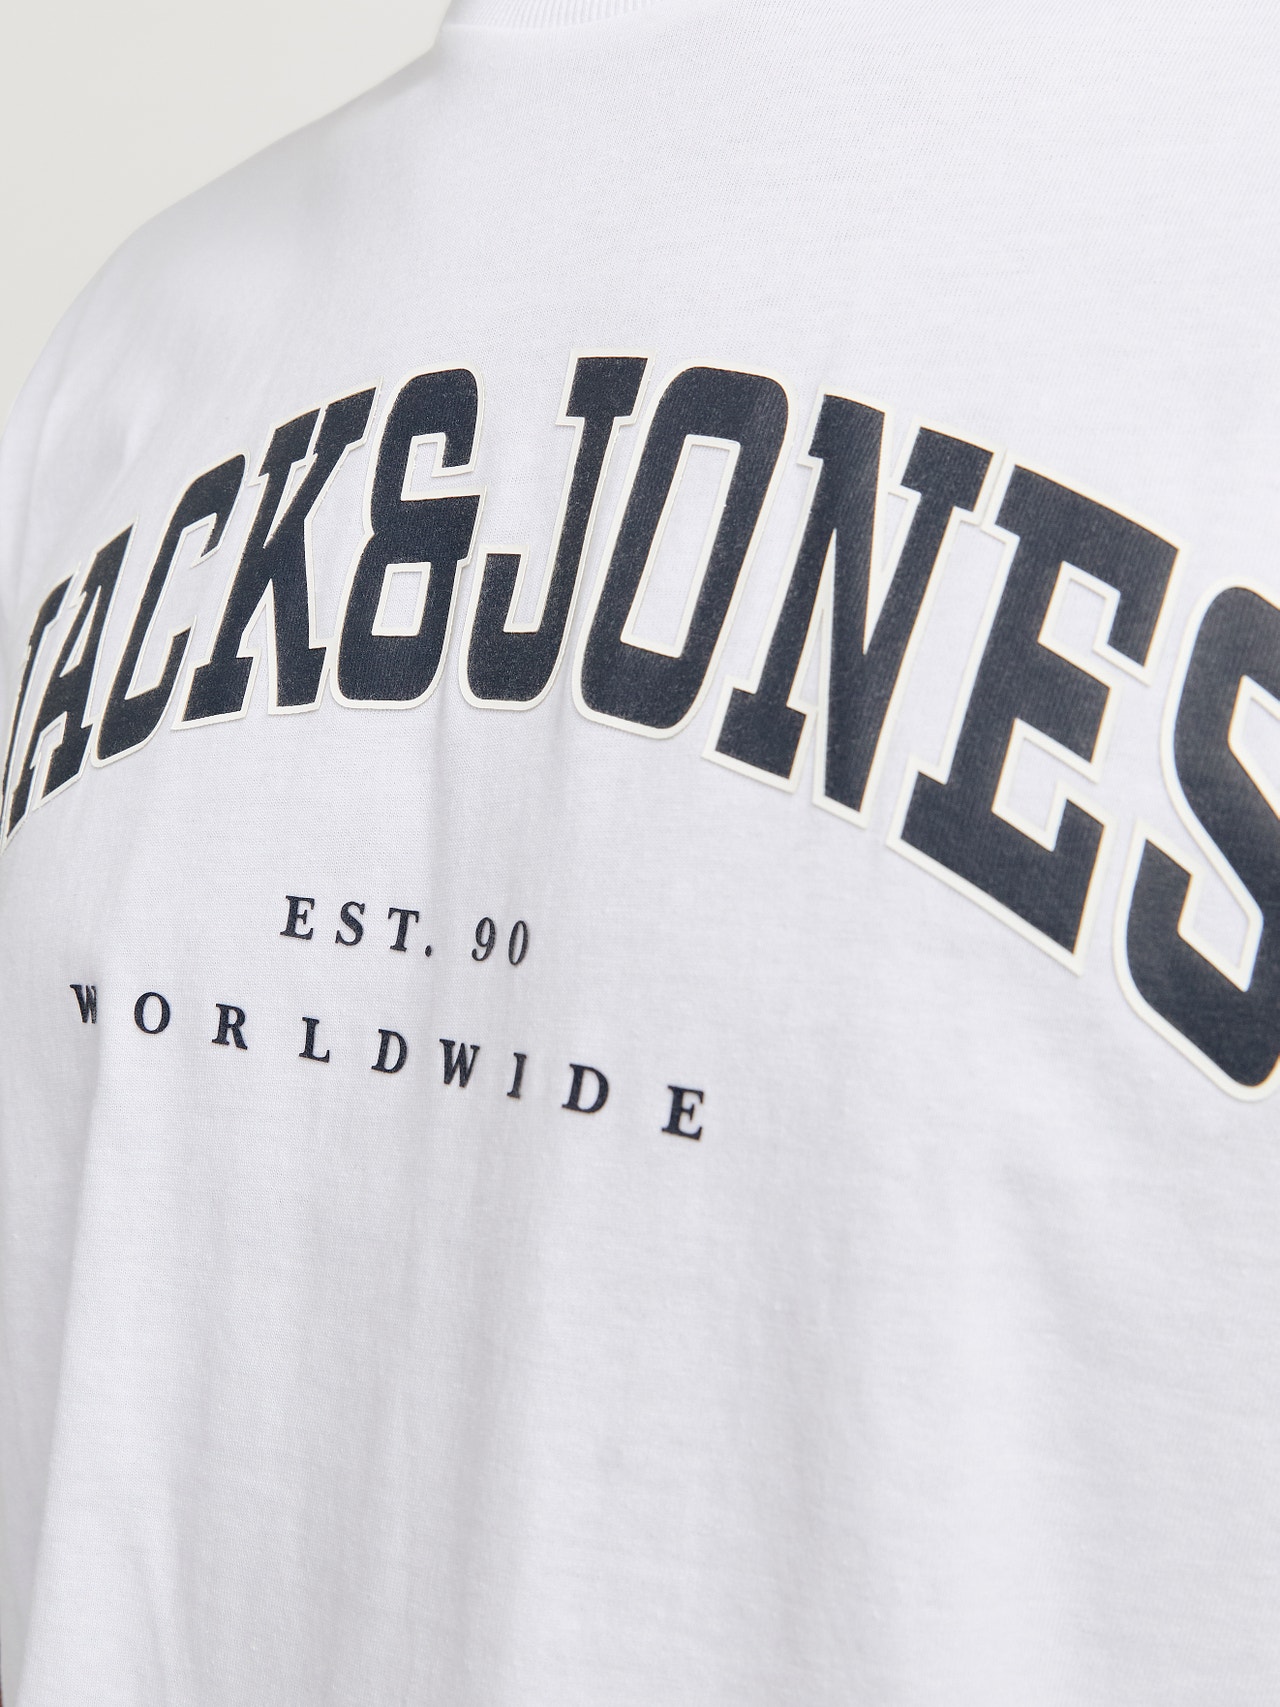 Jack & Jones Logo Pyöreä pääntie T-paita -White - 12257579